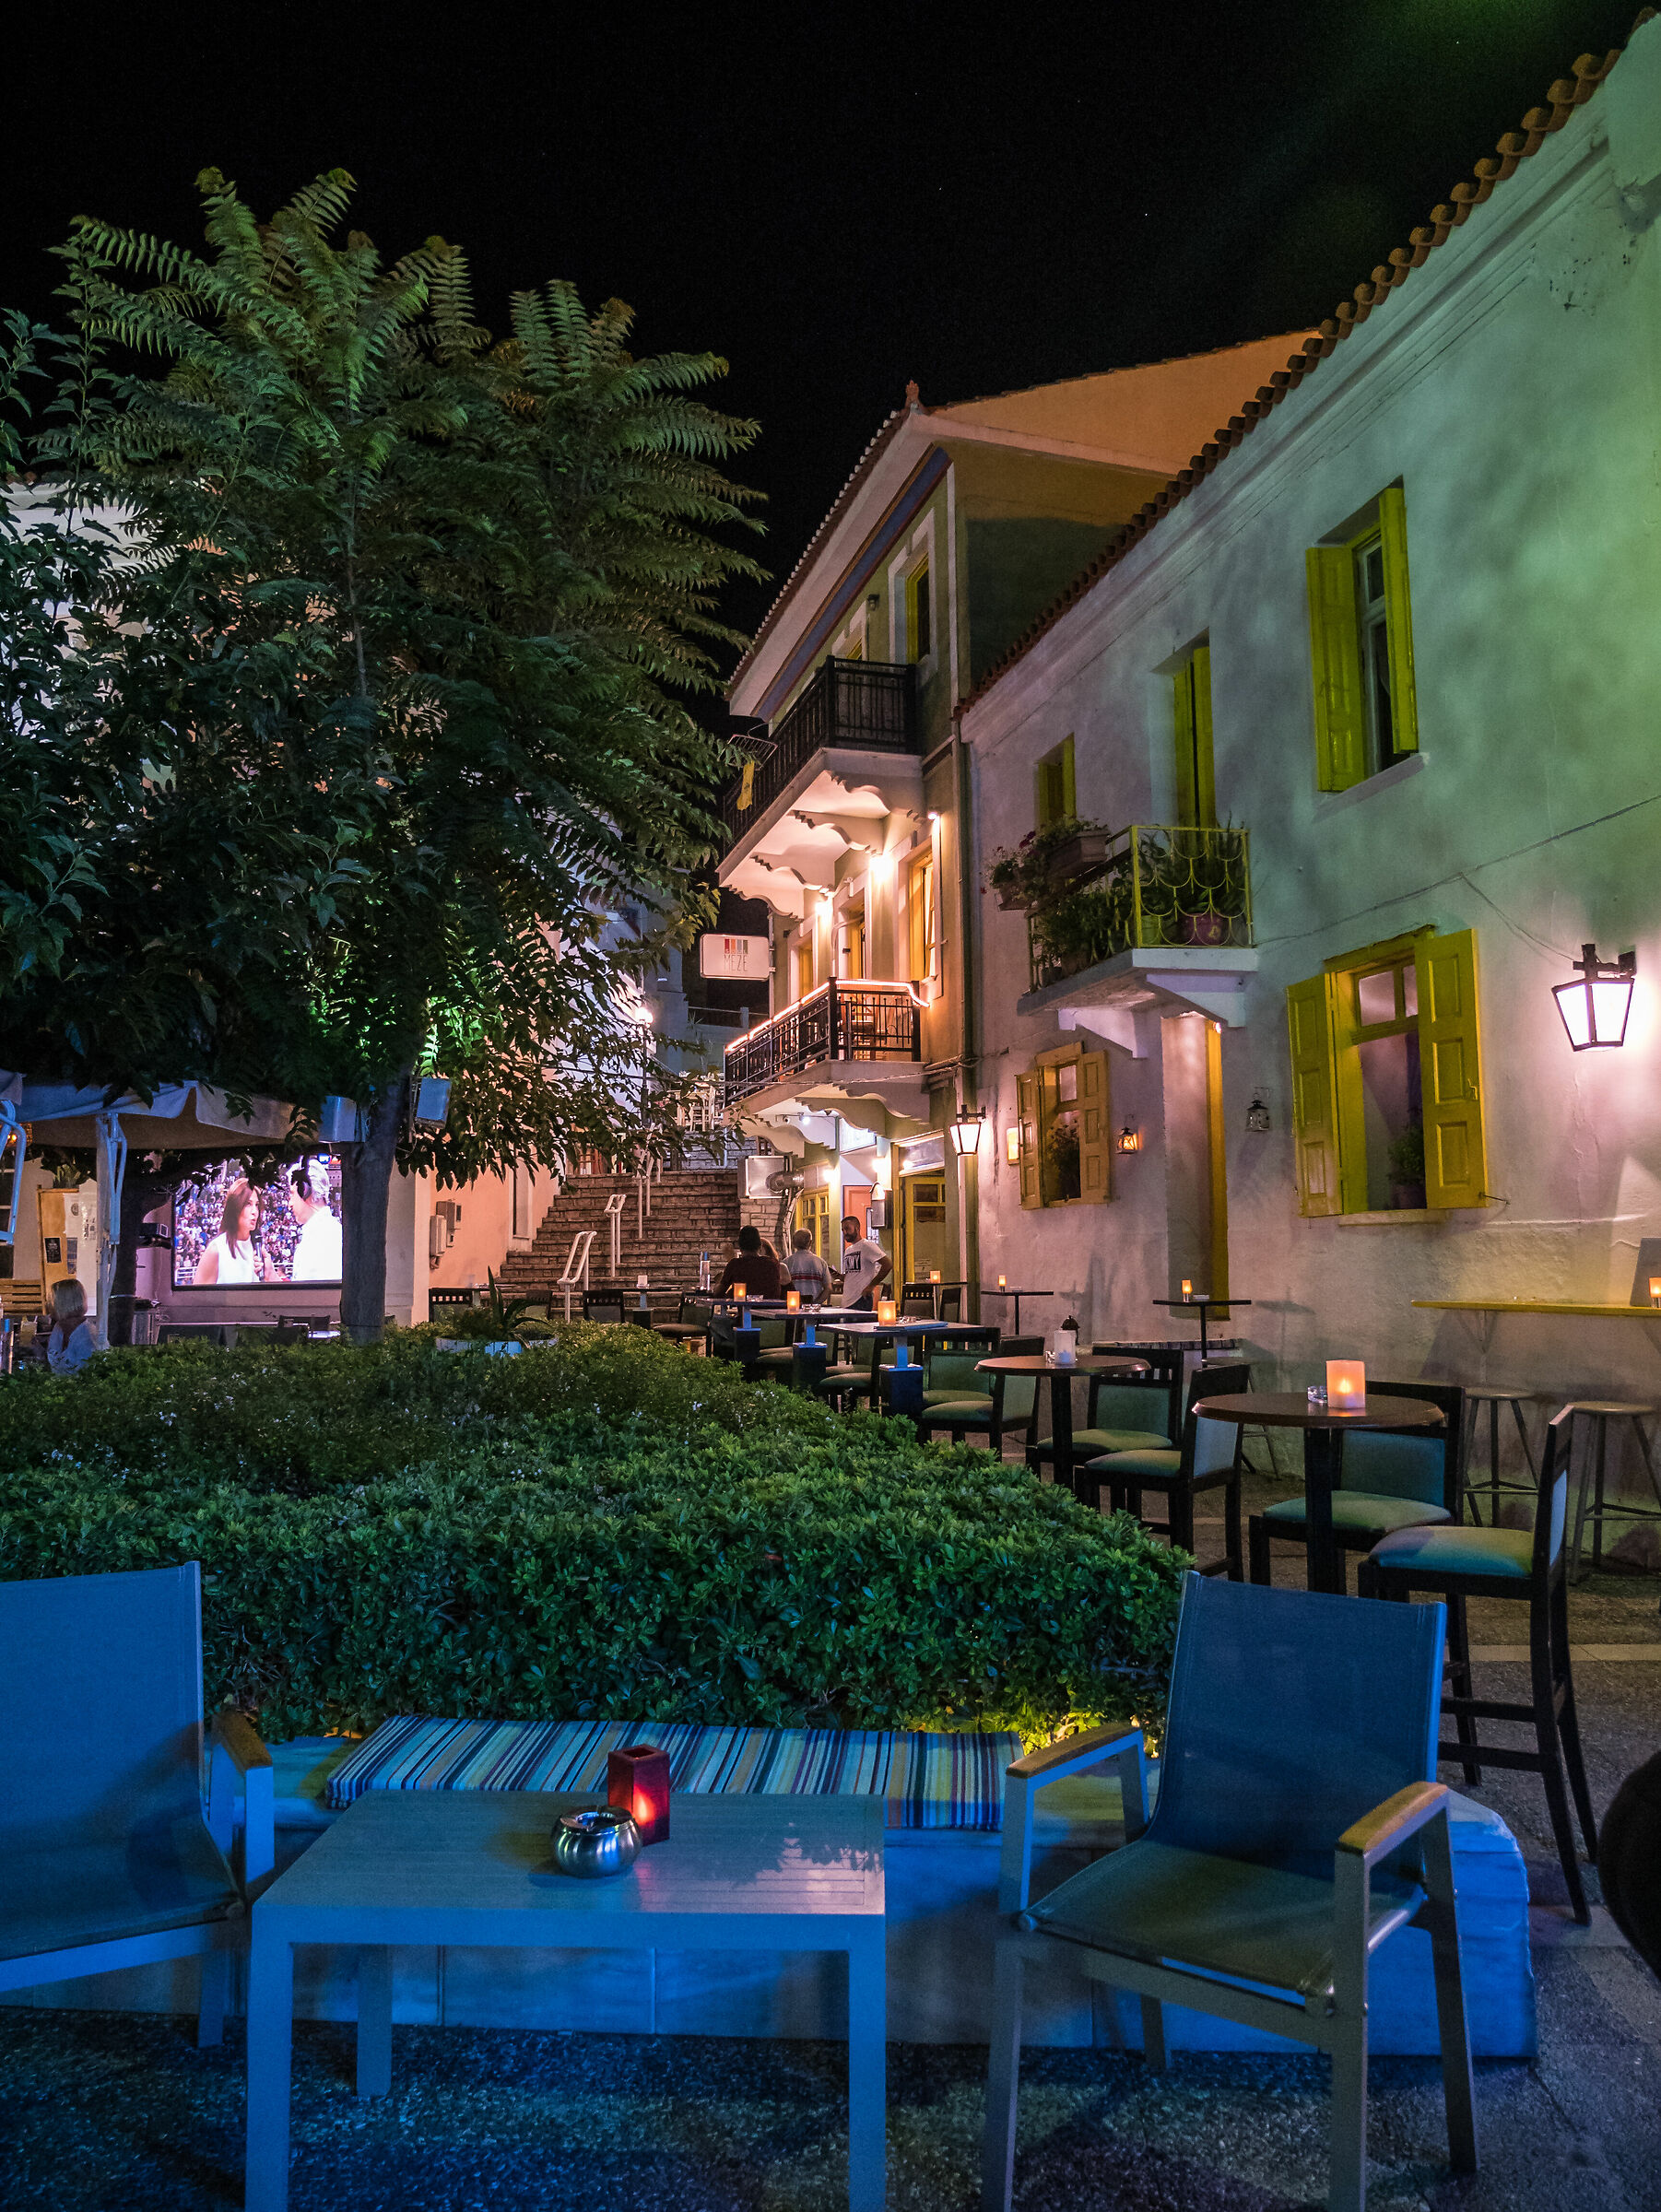 Karlovasi night (Samos Grecia)...